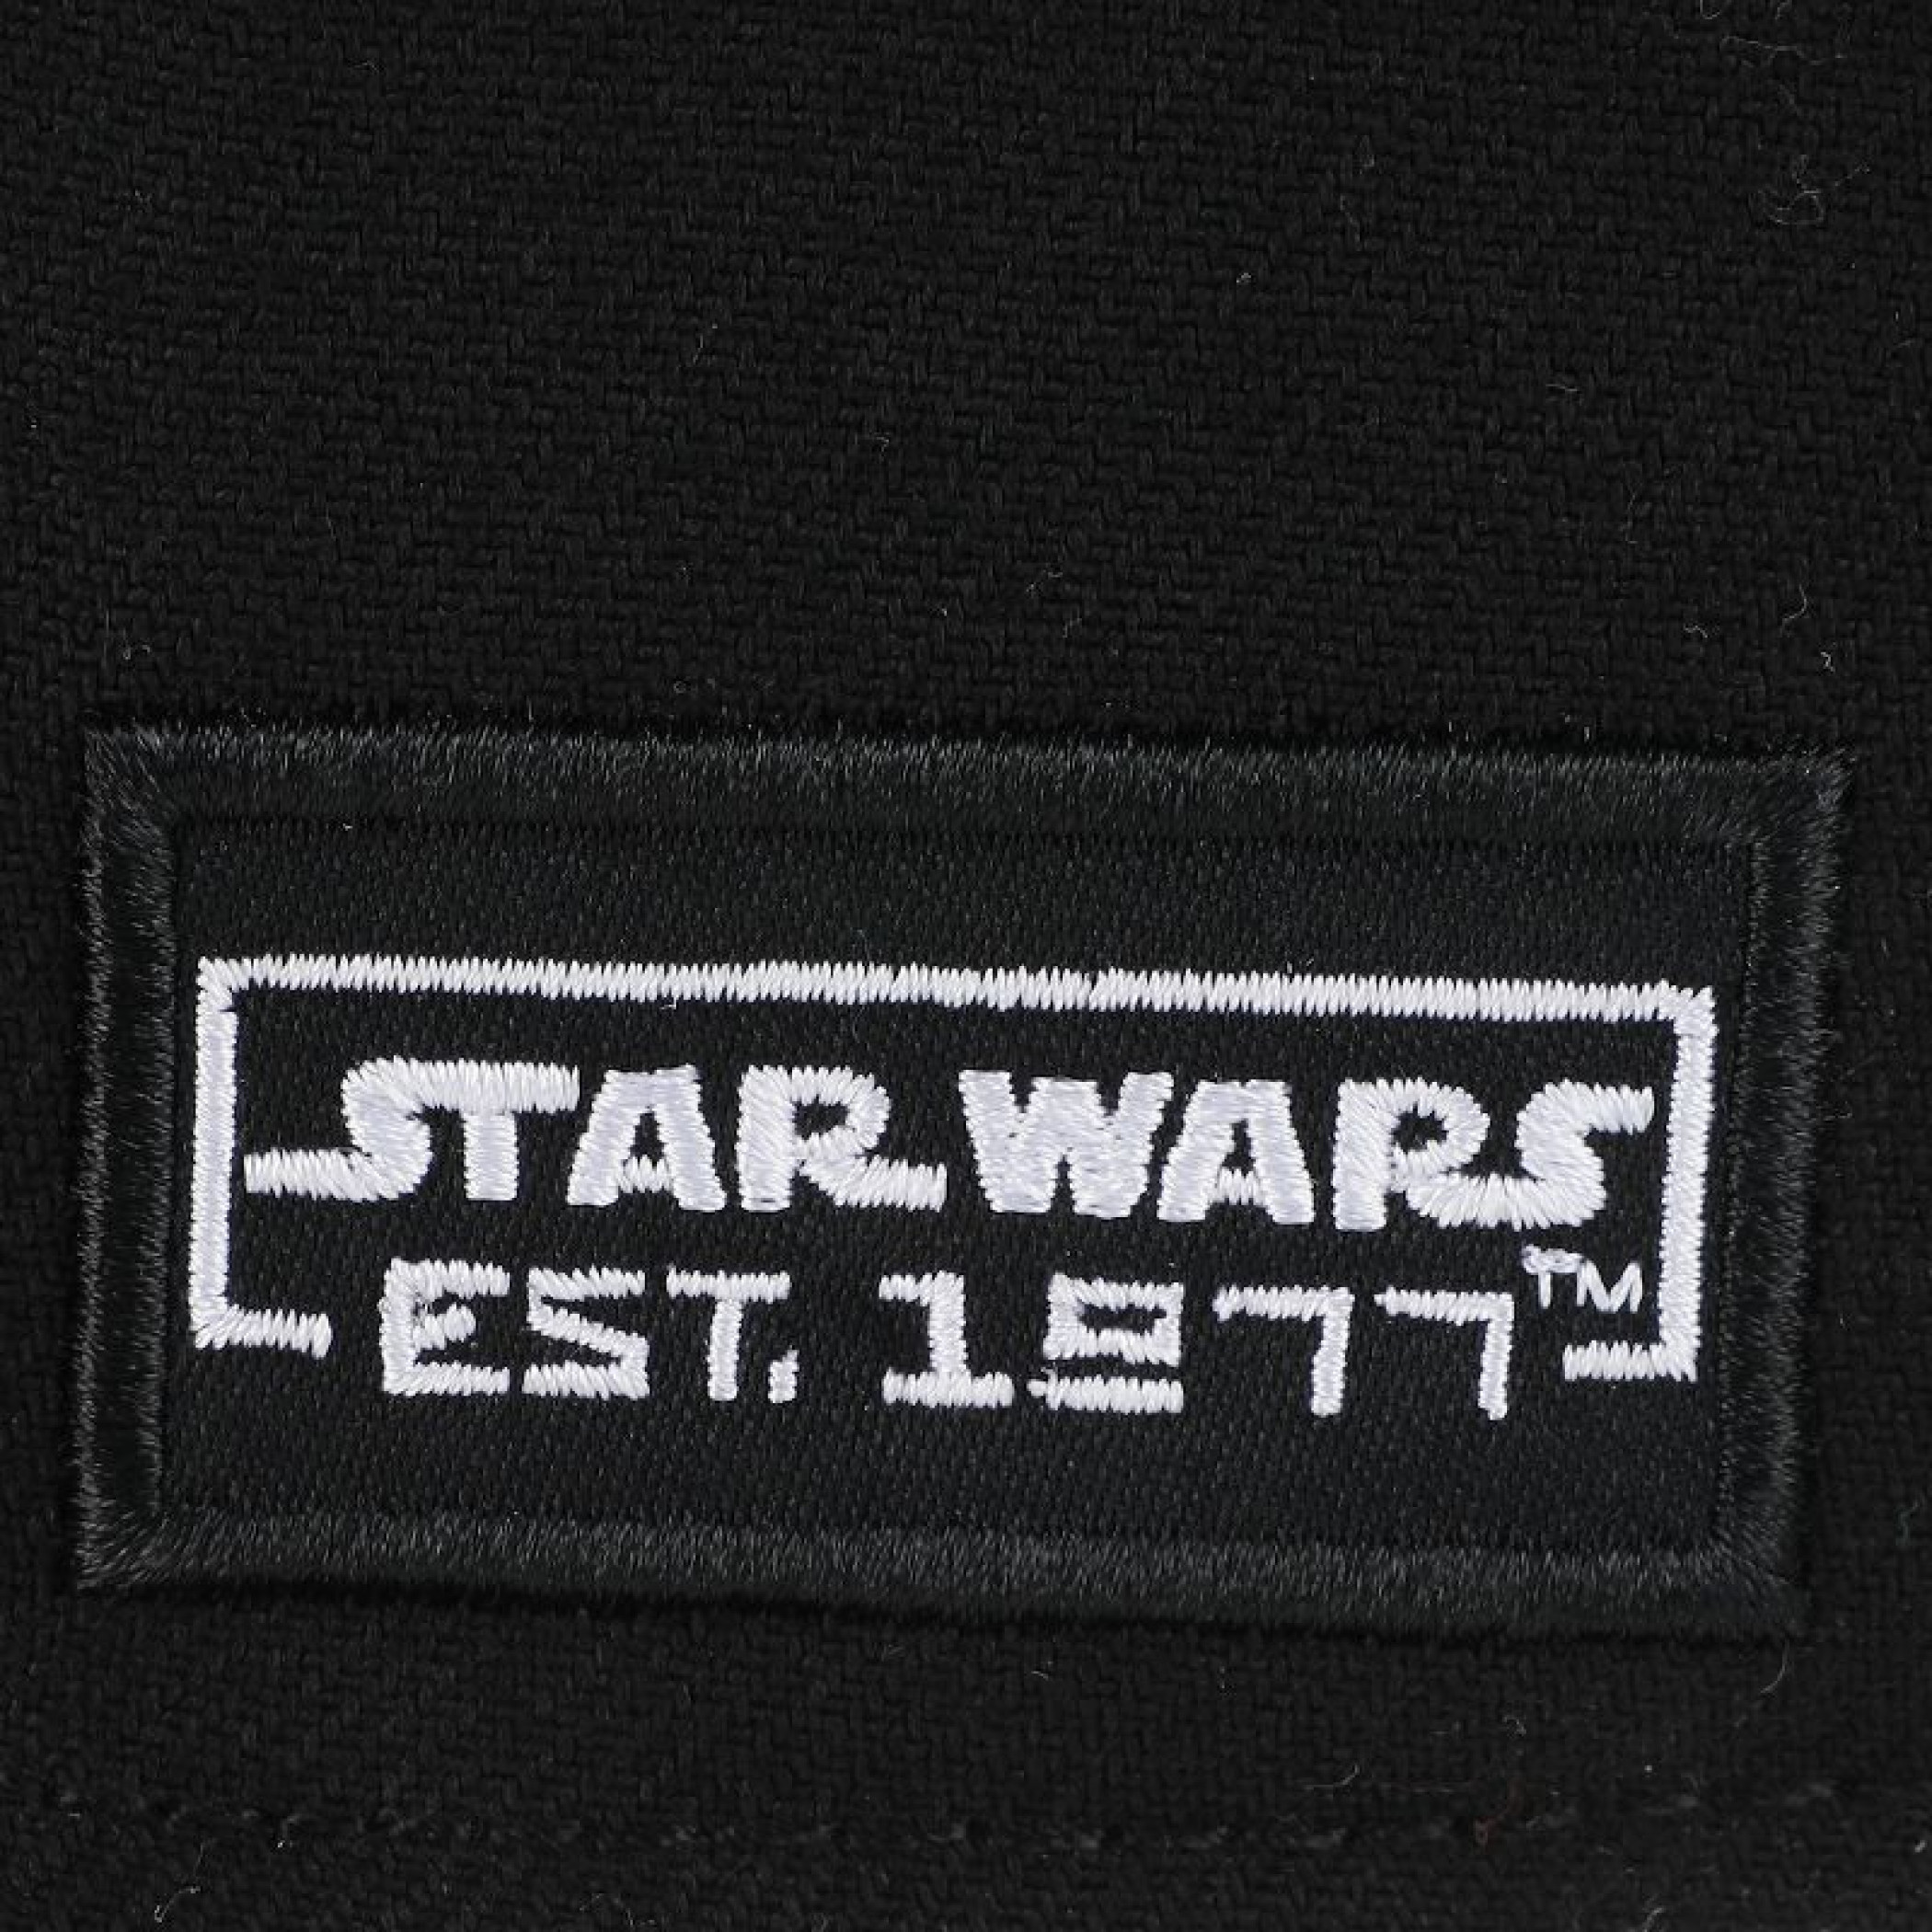 Star Wars X-Wing Patch Flat Bill Snapback Hat